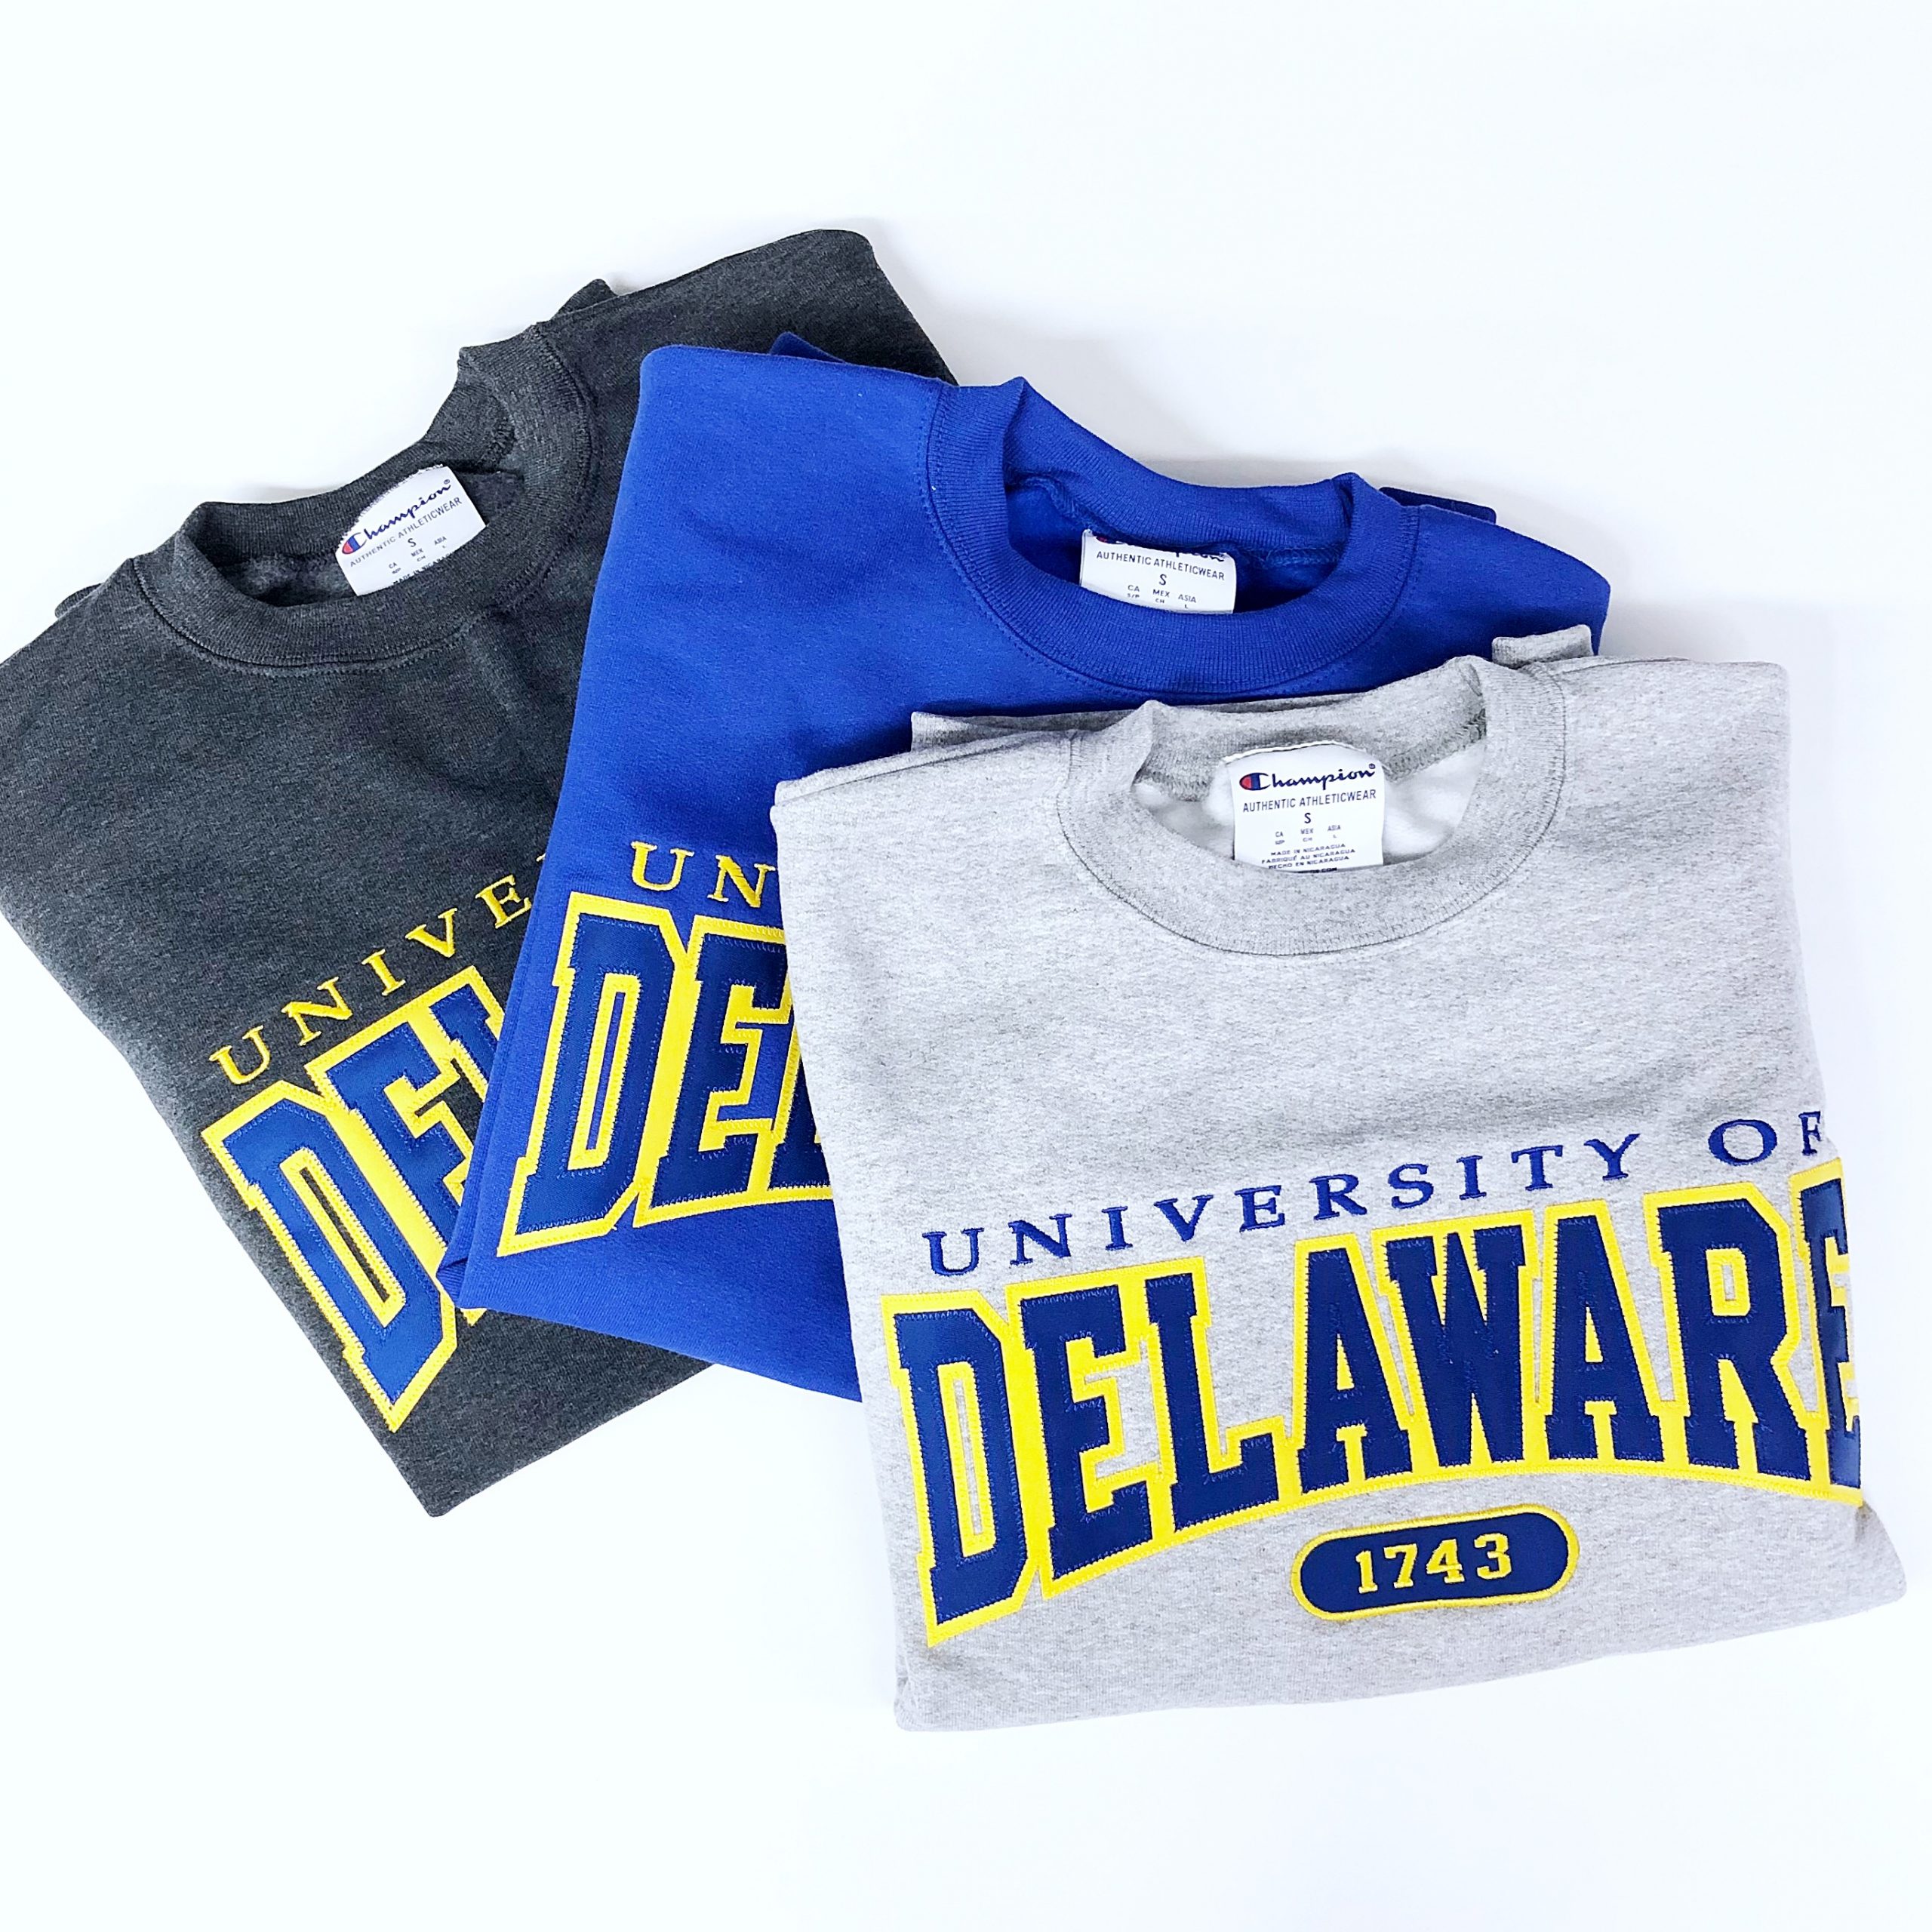 90s University of Delaware Crewneck Sweatshirt - Men's Large